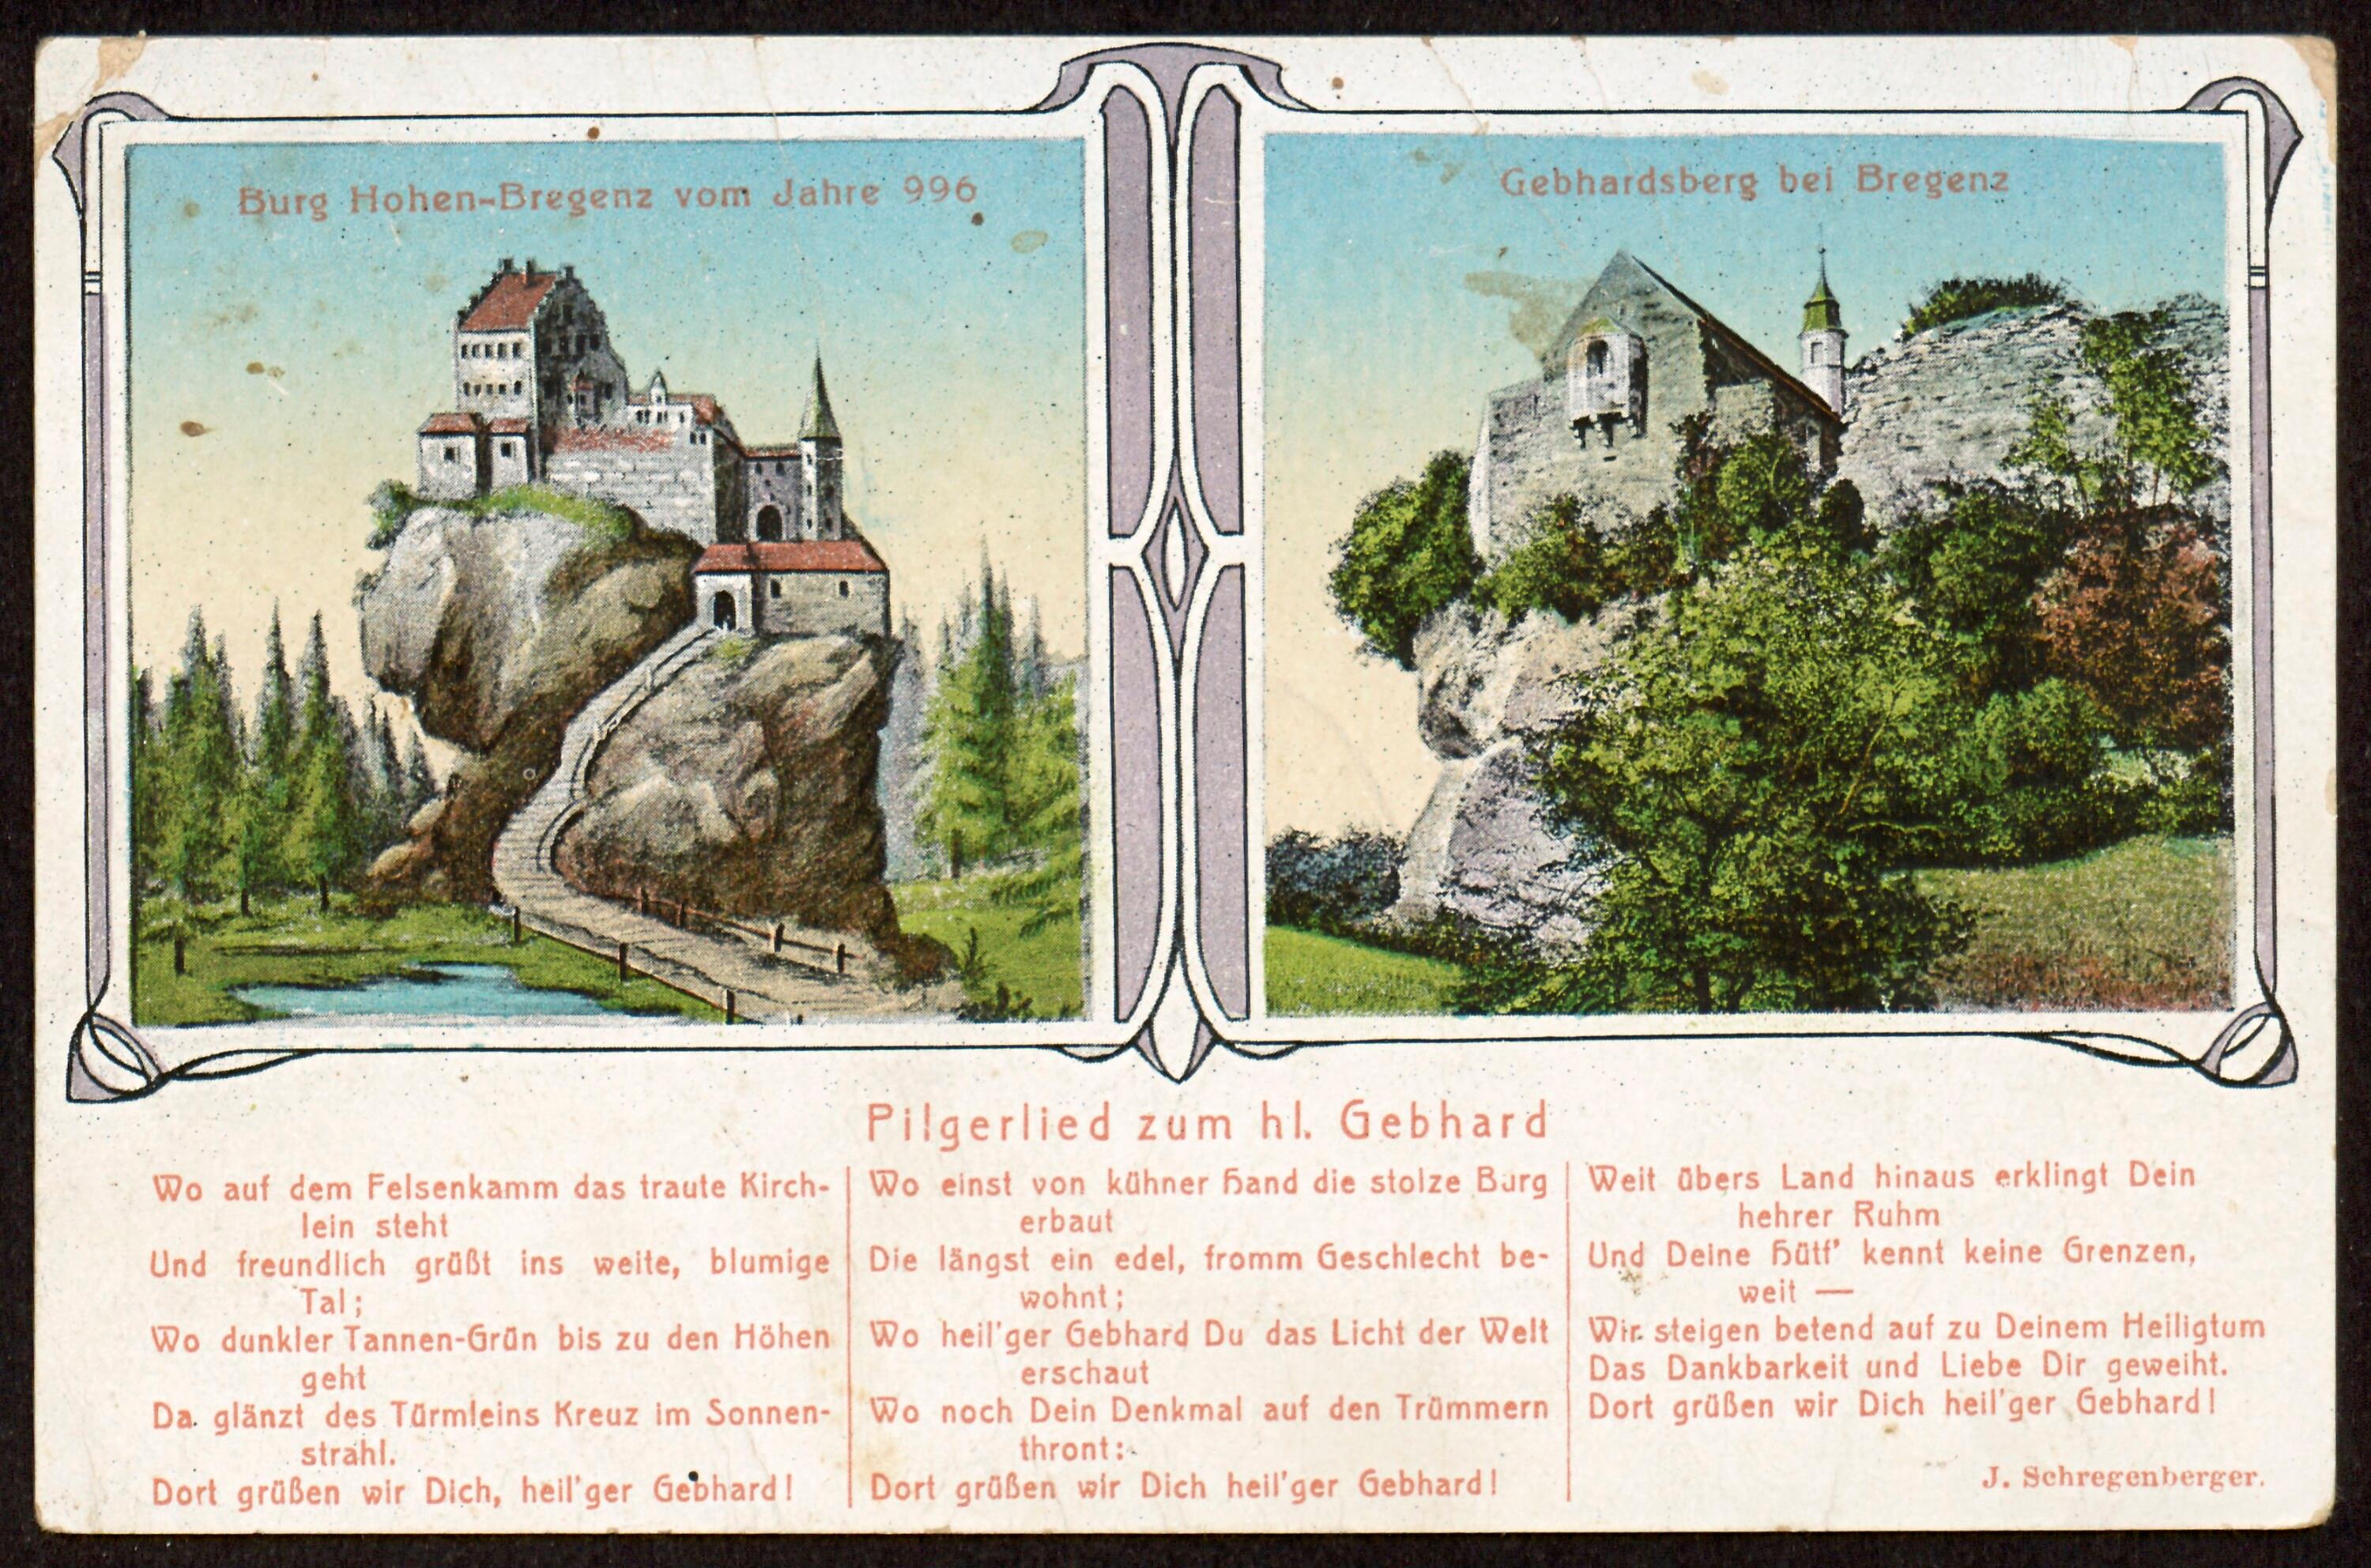 Burg Hohen-Bregenz vom Jahre 996 ; Gebhardsberg bei Bregenz ; Pilgerlied zum hl. Gebhard></div>


    <hr>
    <div class=